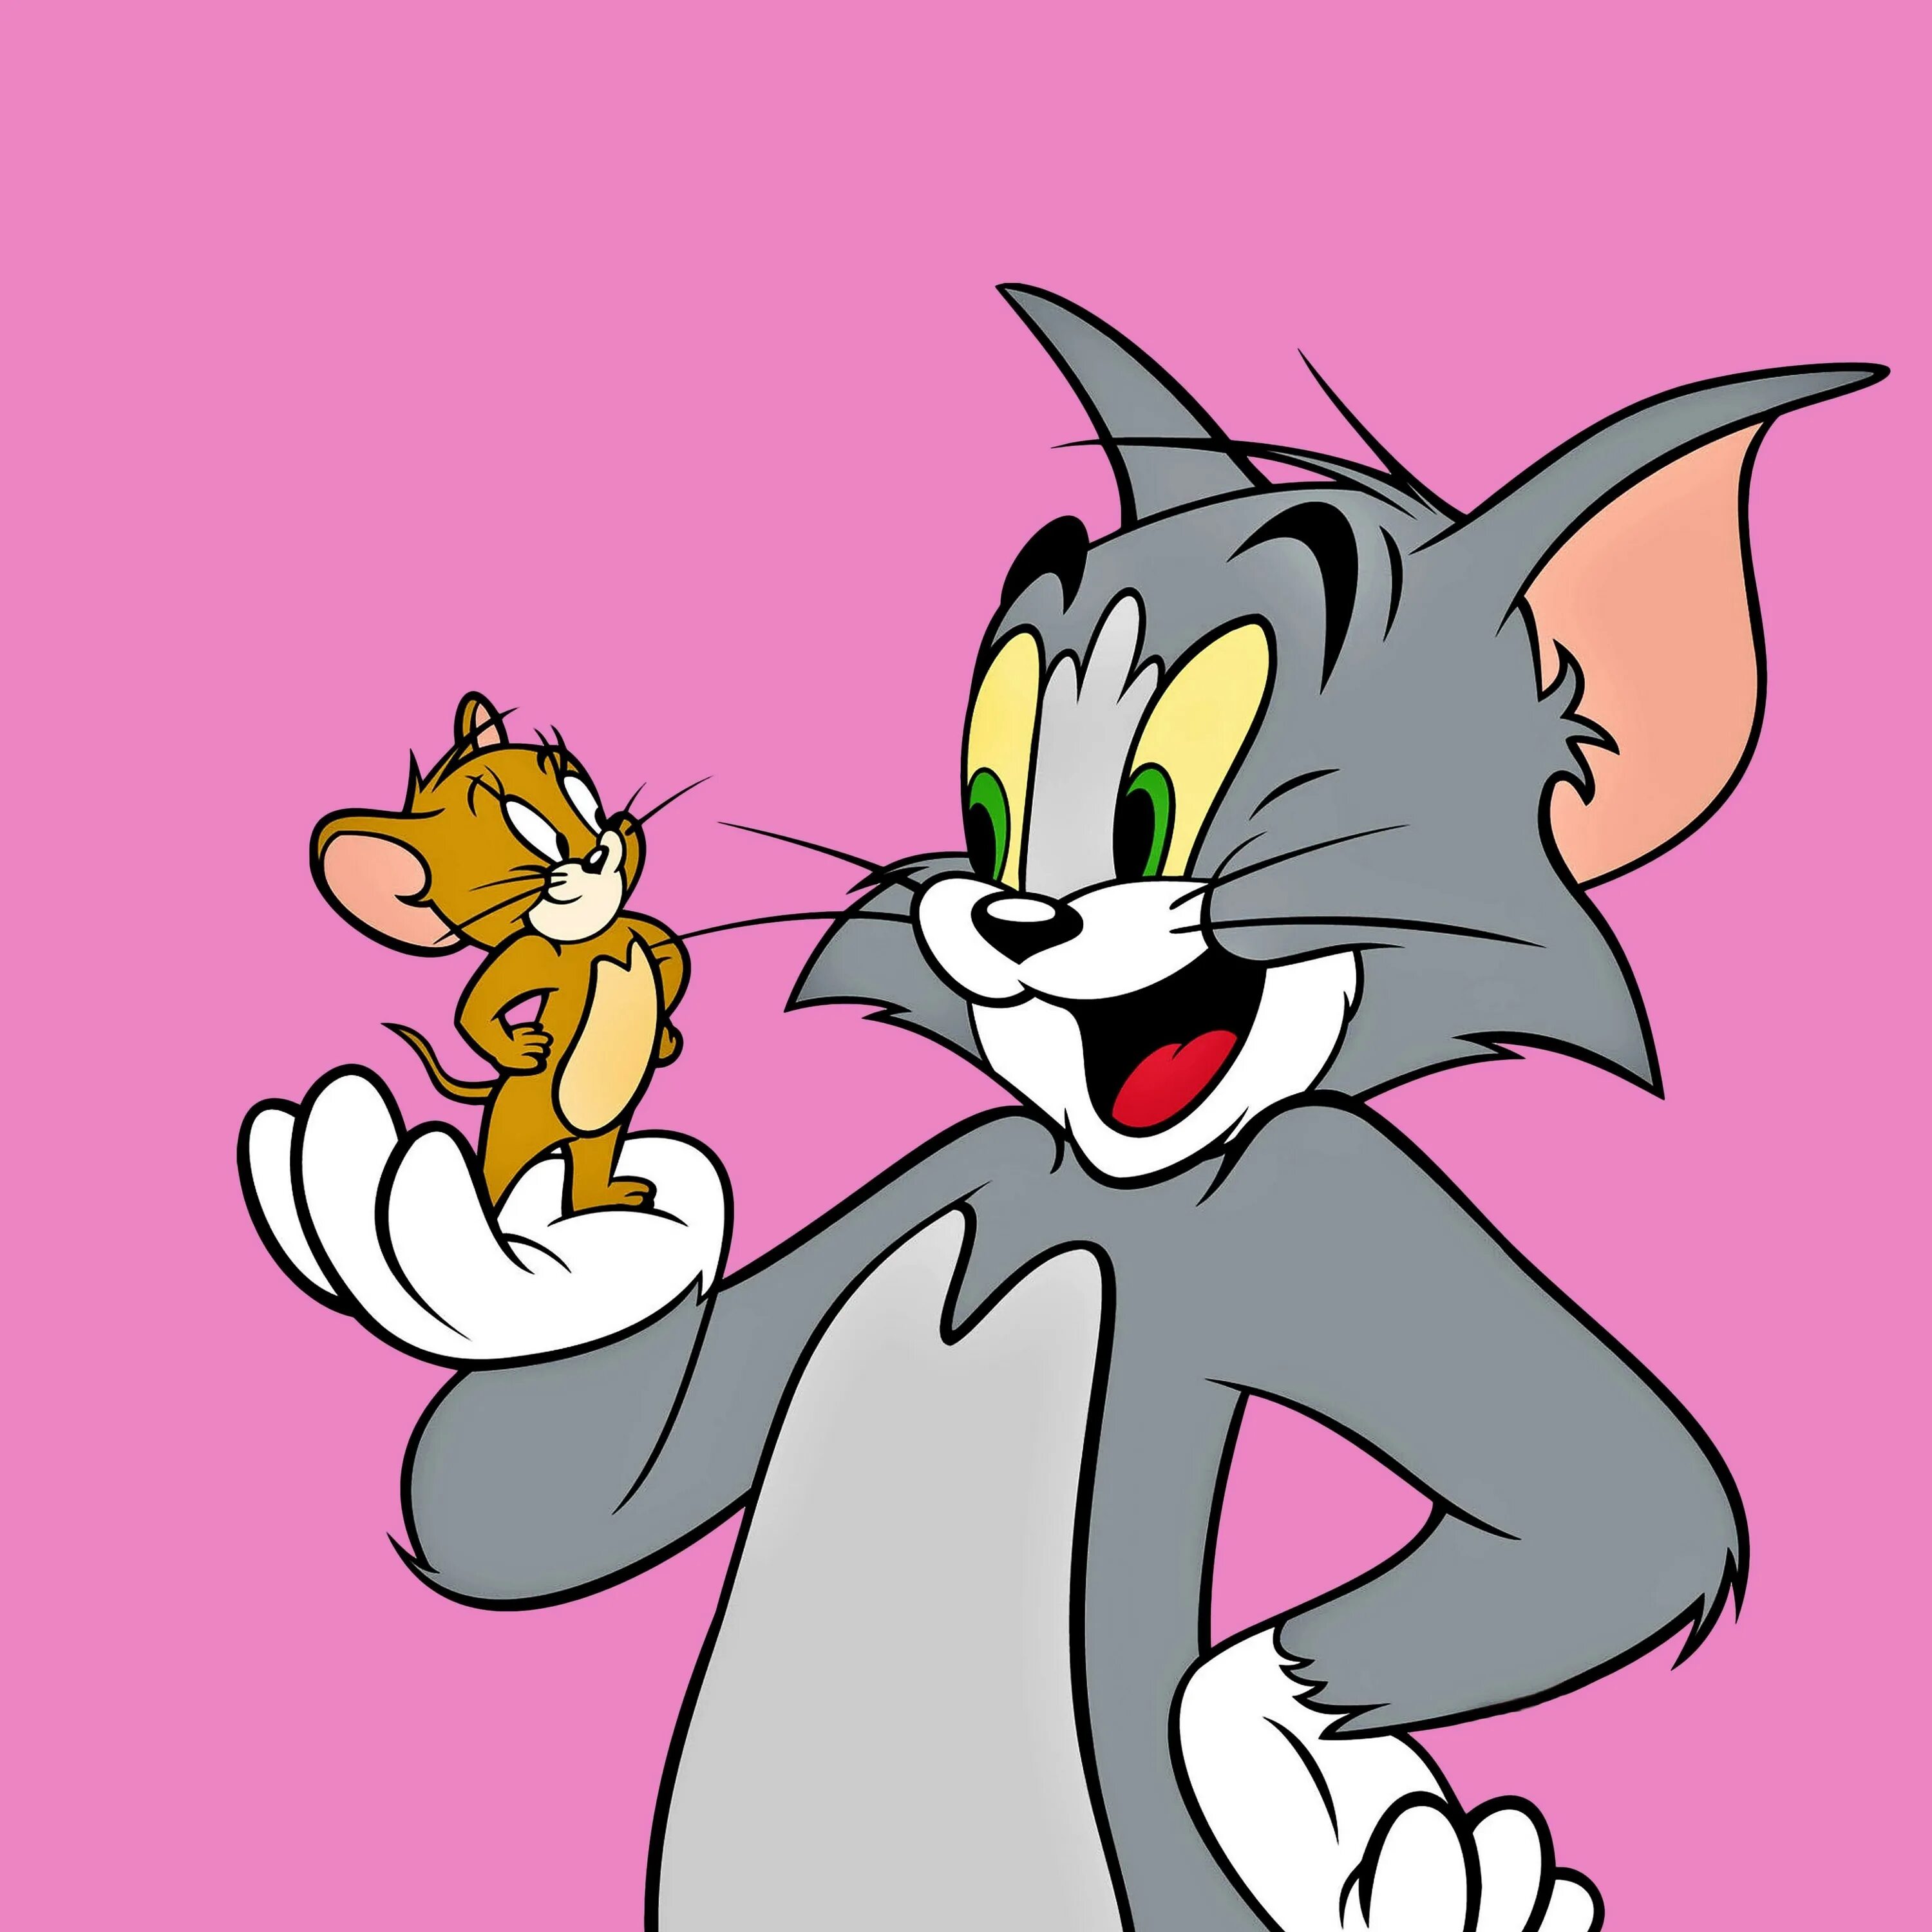 1 й том. Tom and Jerry. Том ва Джерри. Том картинки. Том и Джерри картинки.